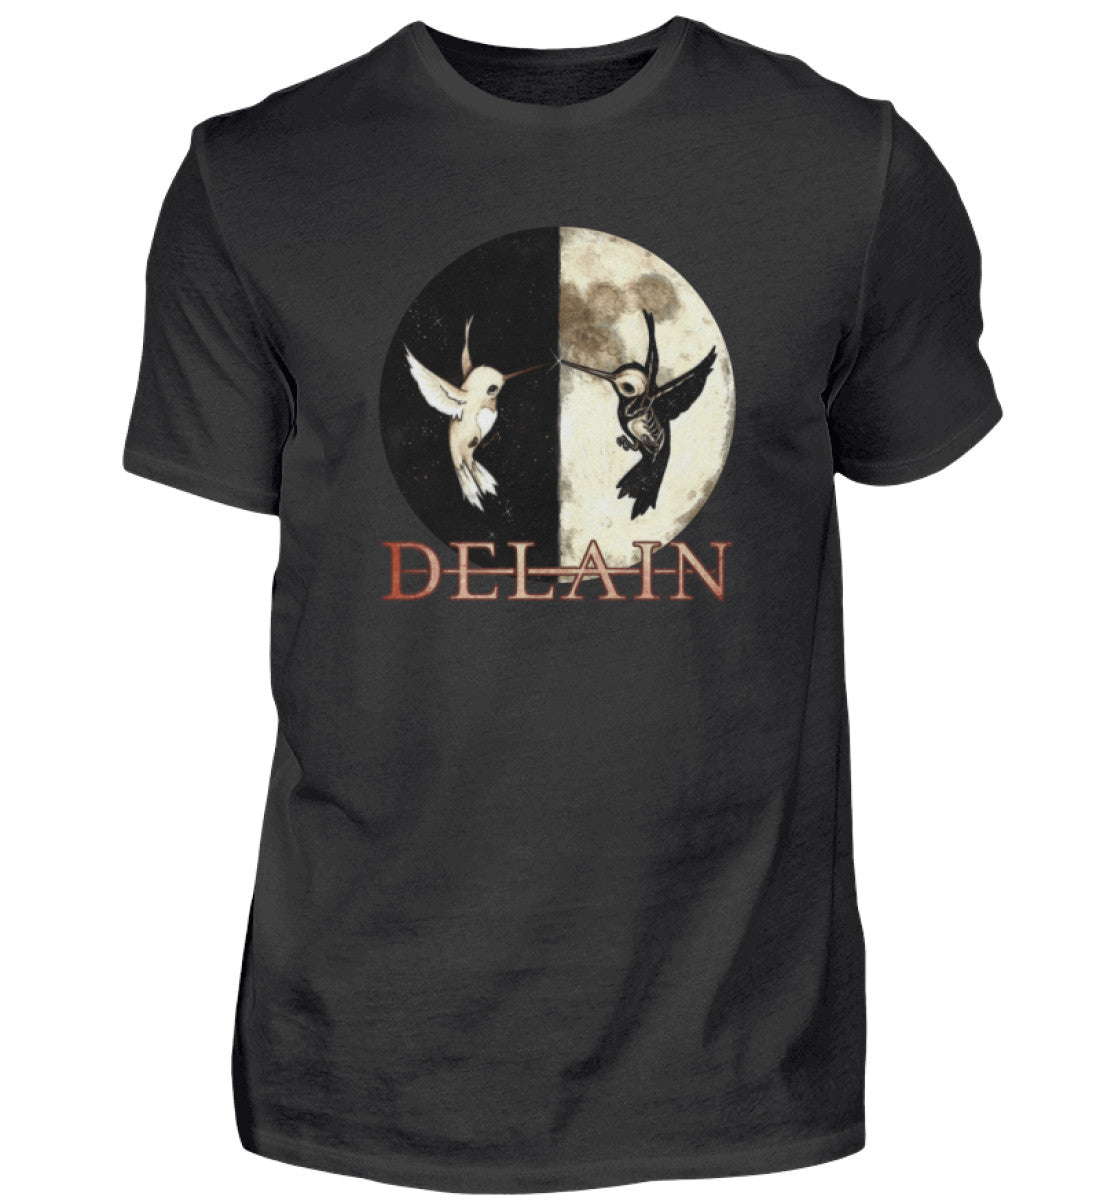 DELAIN T-Shirt Men